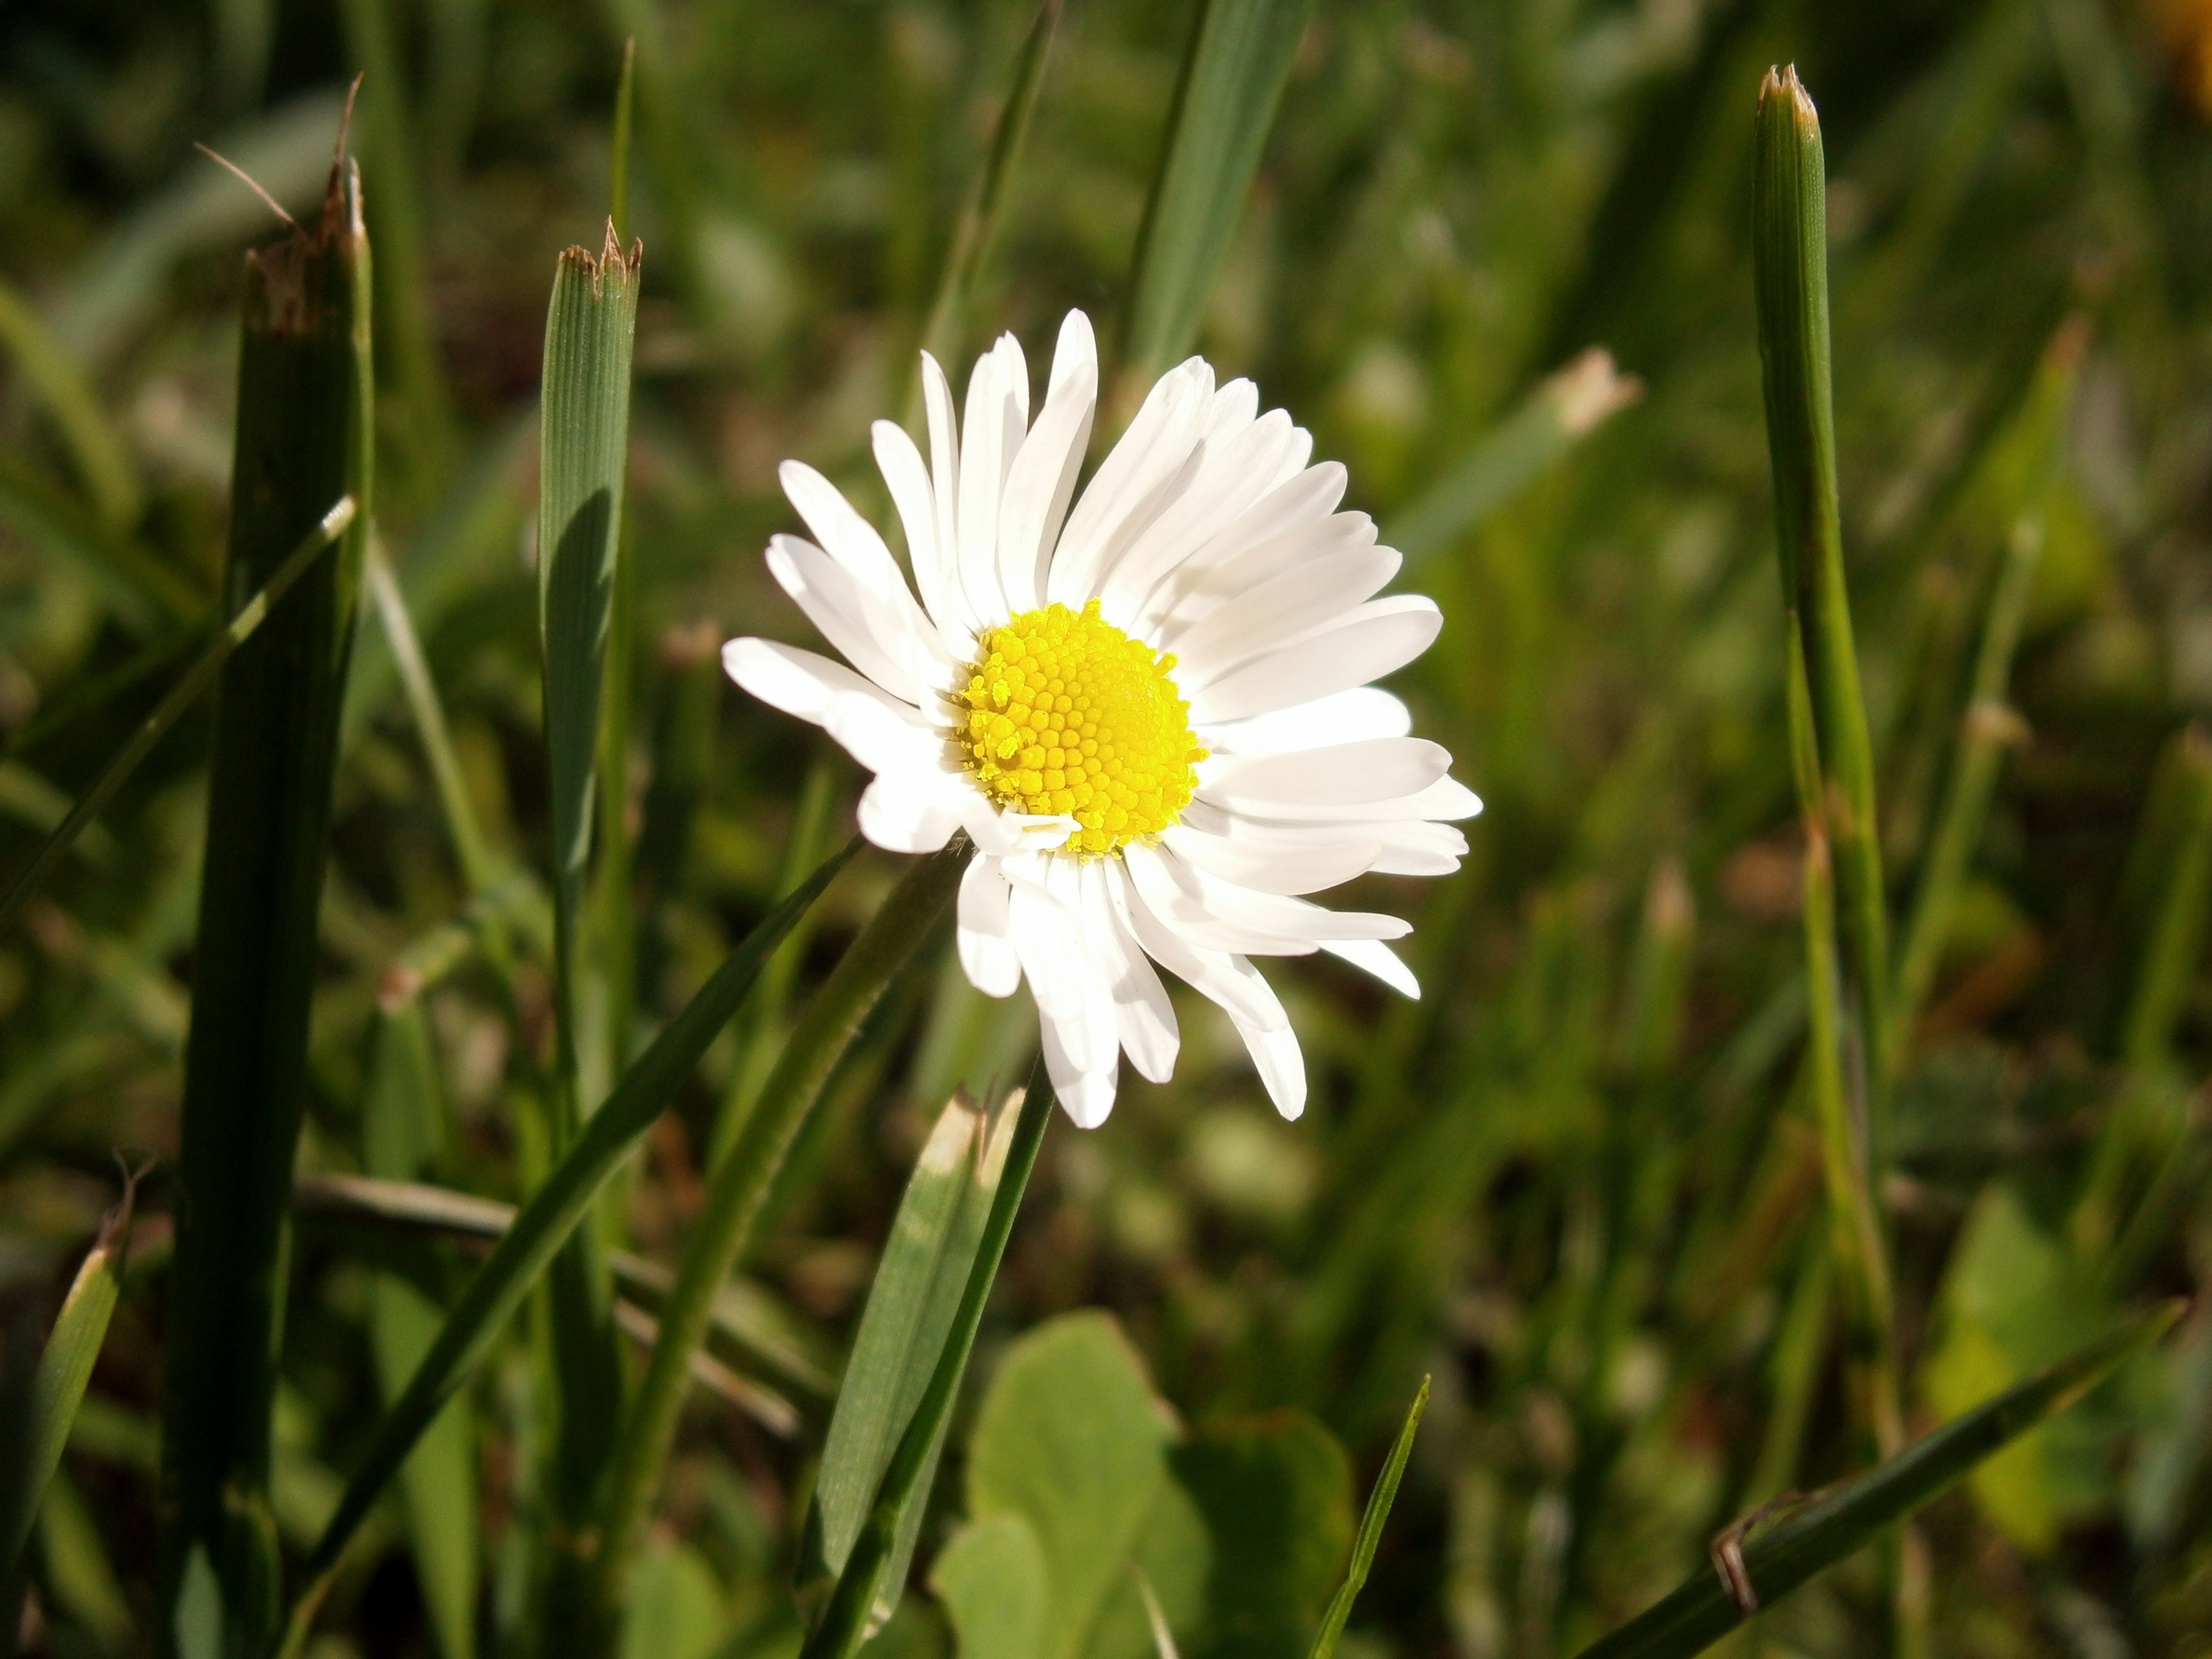 white daisy flower beside green grass during daytime